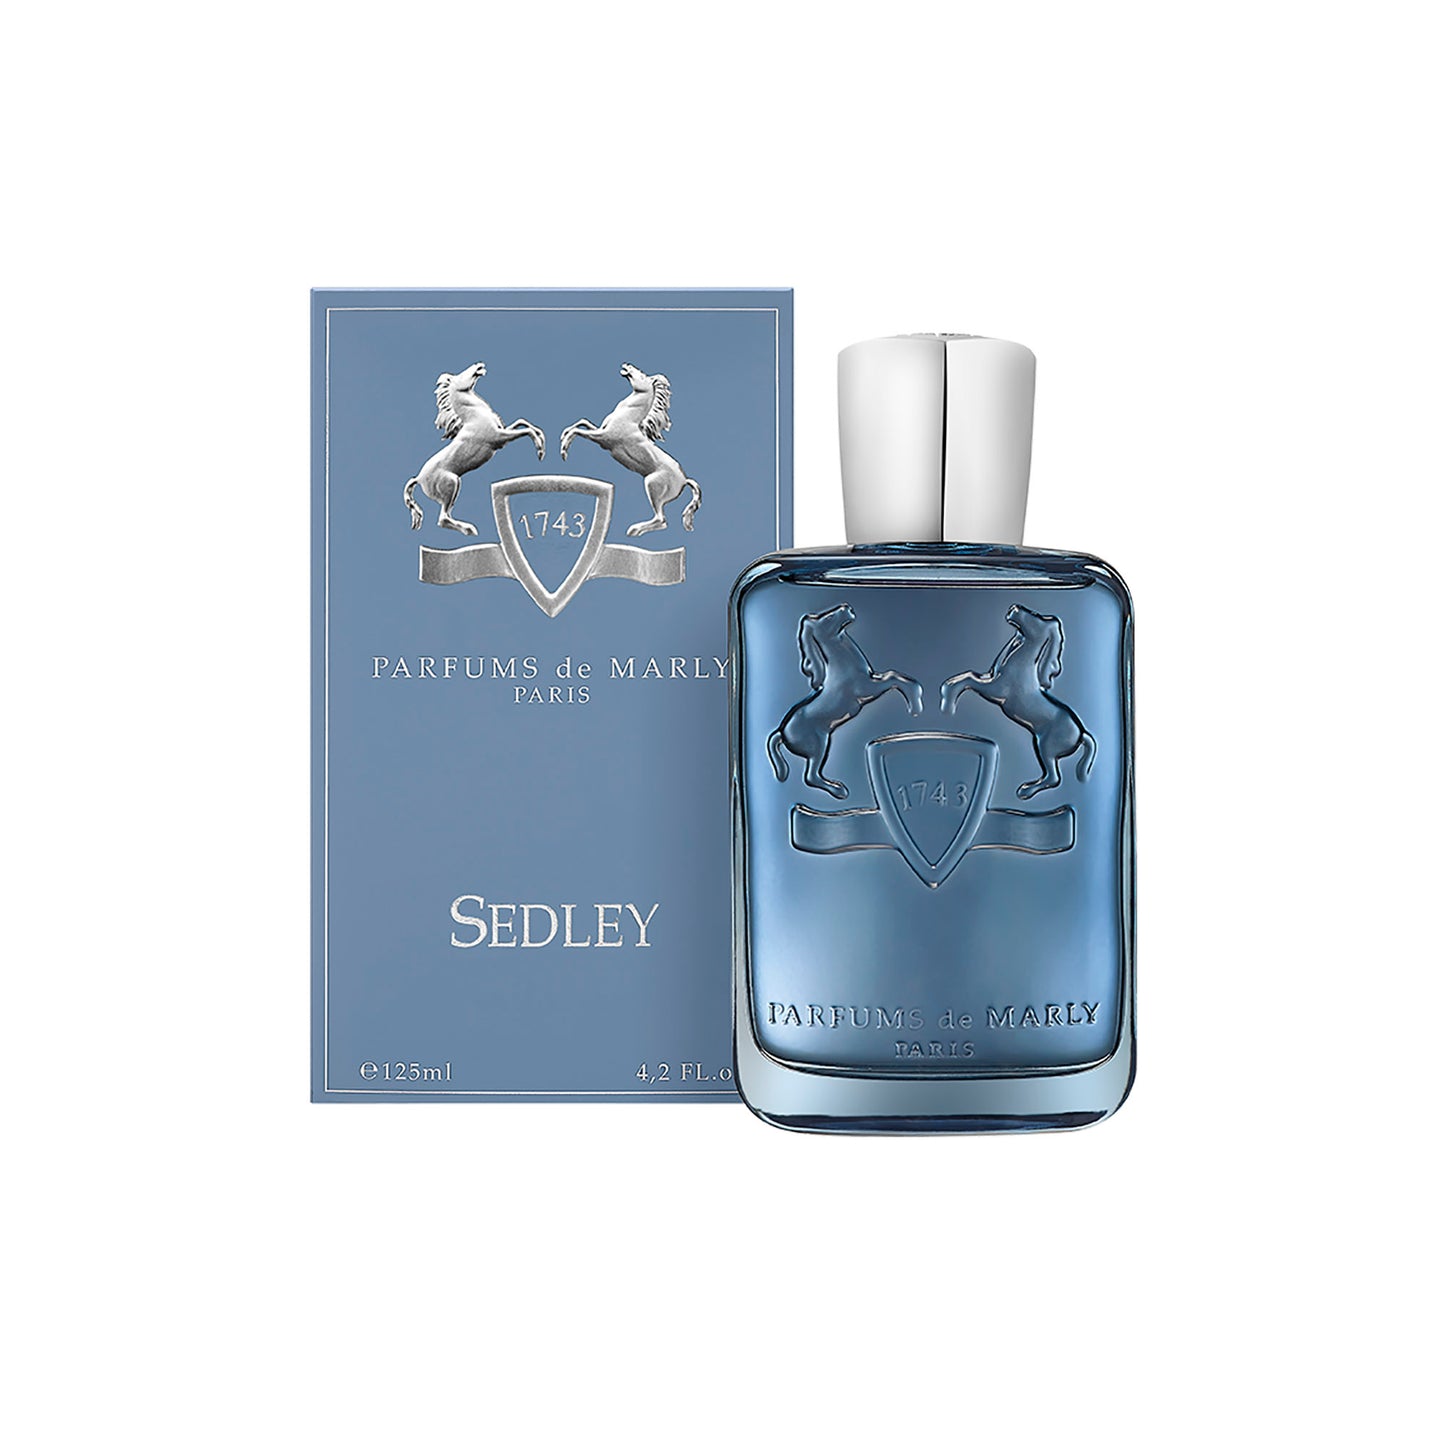 SEDLEY Sample Vial 1.2ML - Eau de Parfum